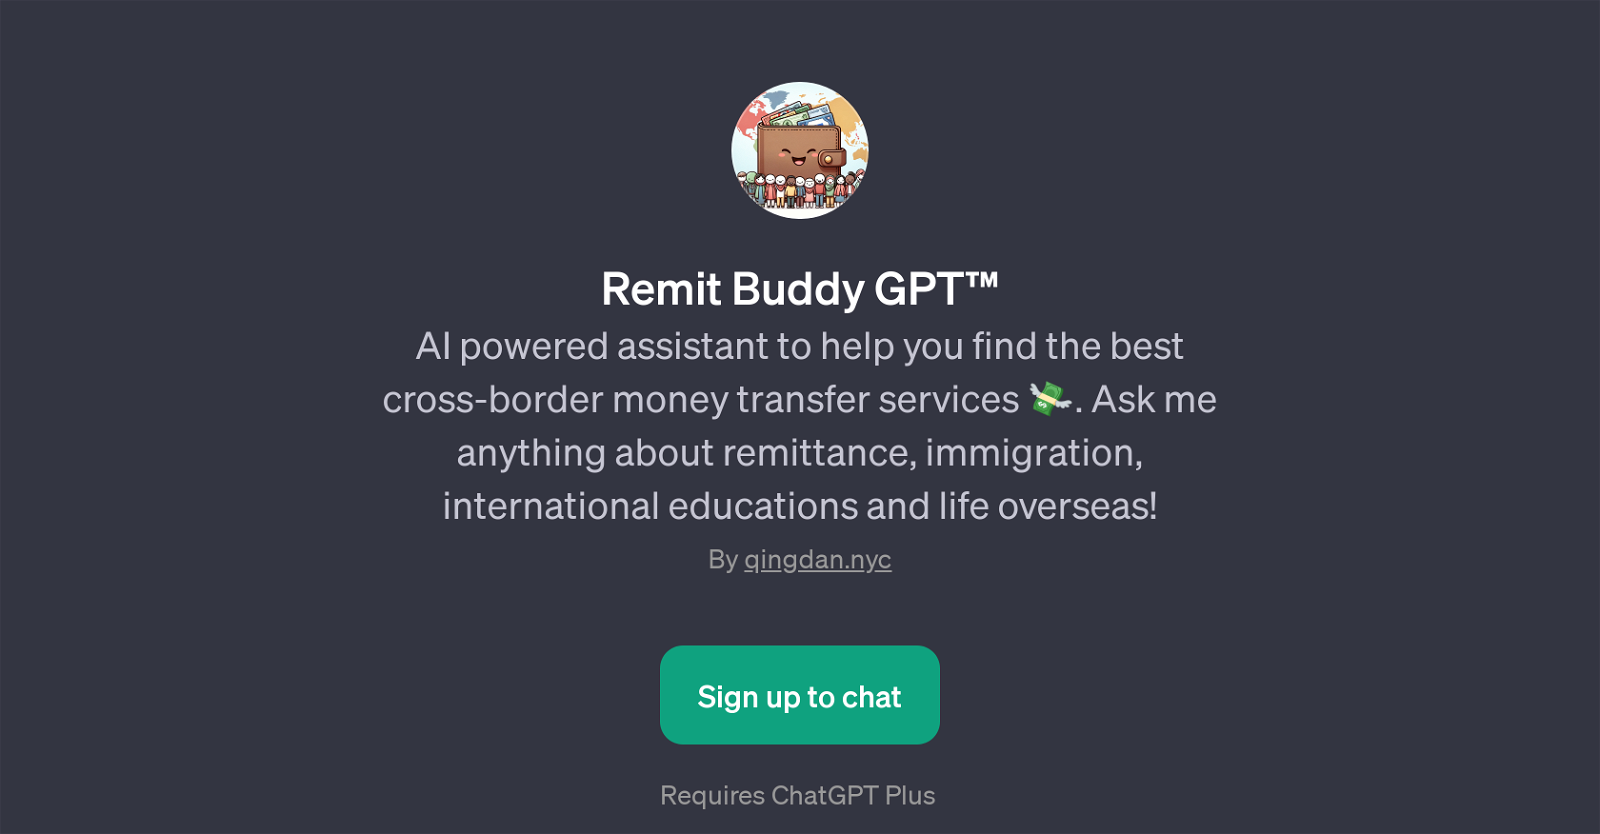 Remit Buddy GPT website